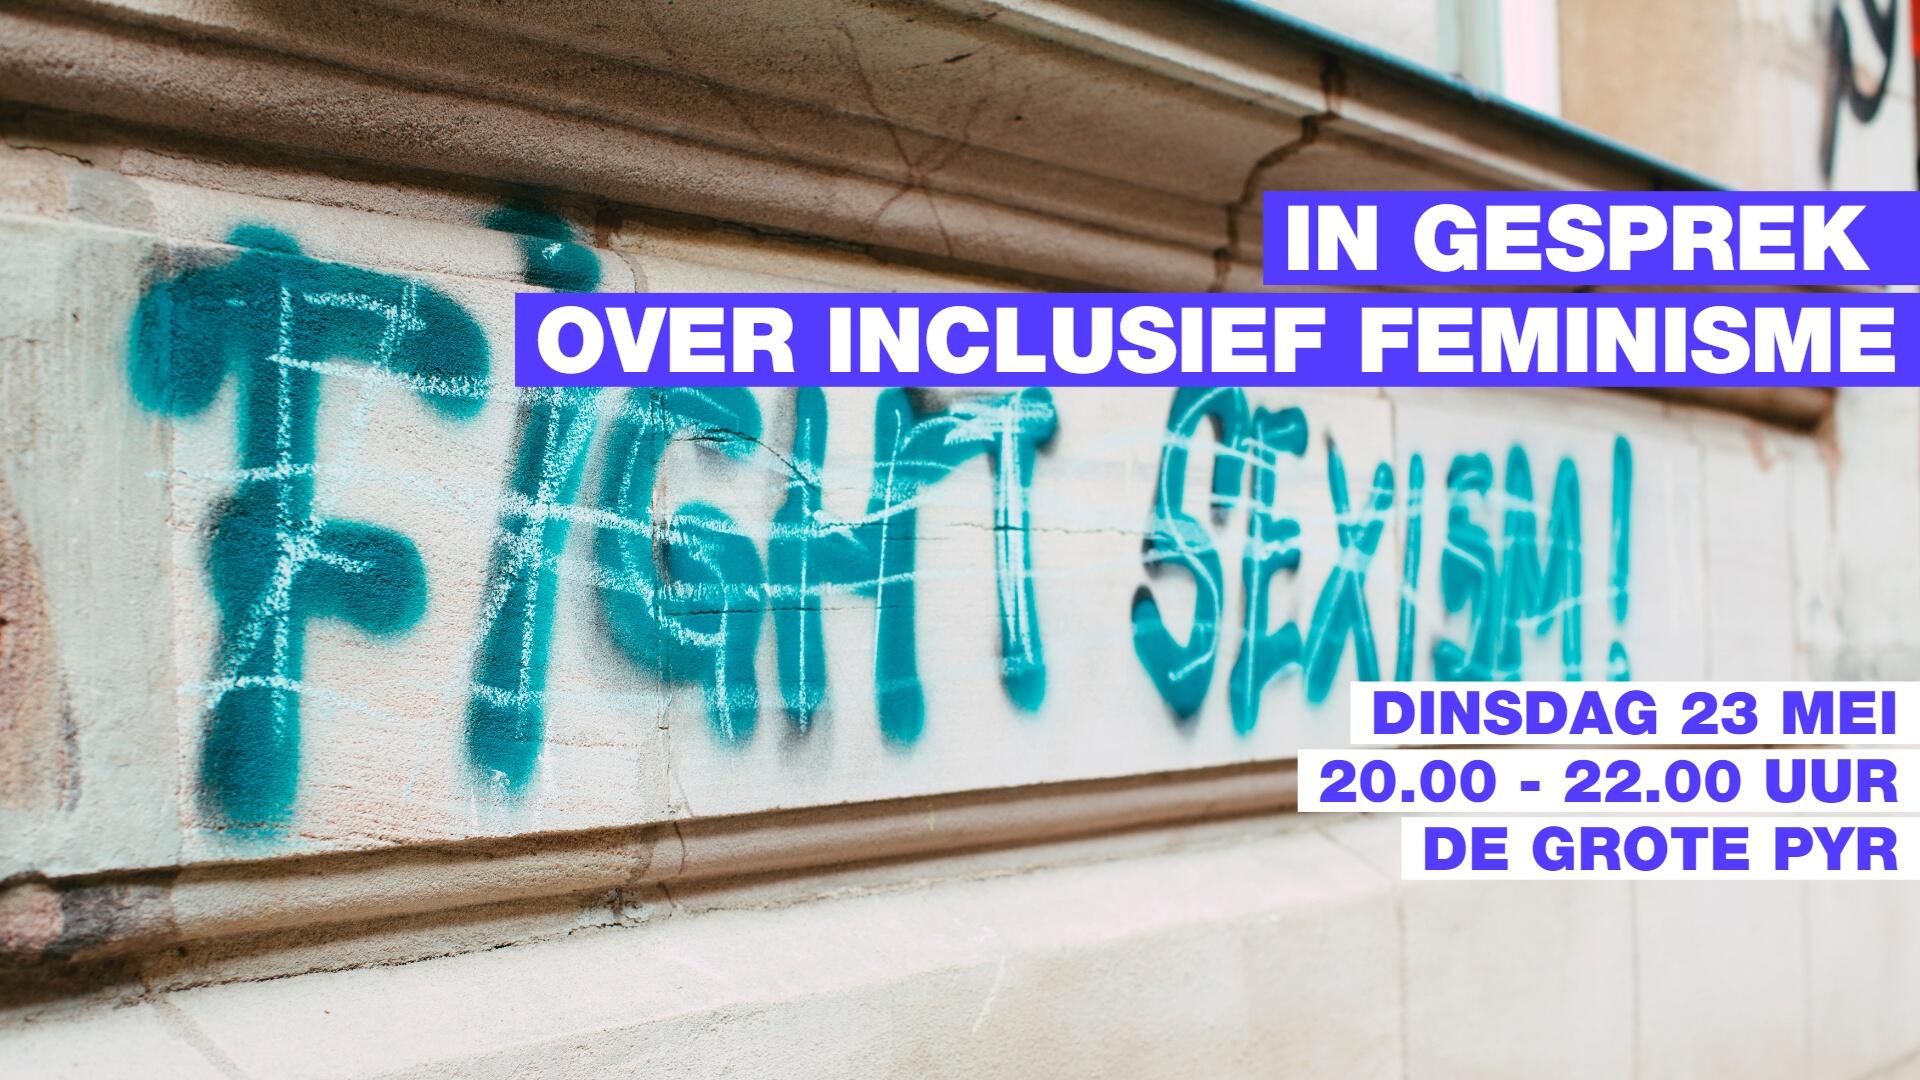 Foto van graffiti met de tekst Fight Sexism. Op de foto staat de tekst In gesprek over inclusief feminisme.Dinsdag 23 mei, 20.00 uur tot 22.00 uur, De Grote Pyr. 